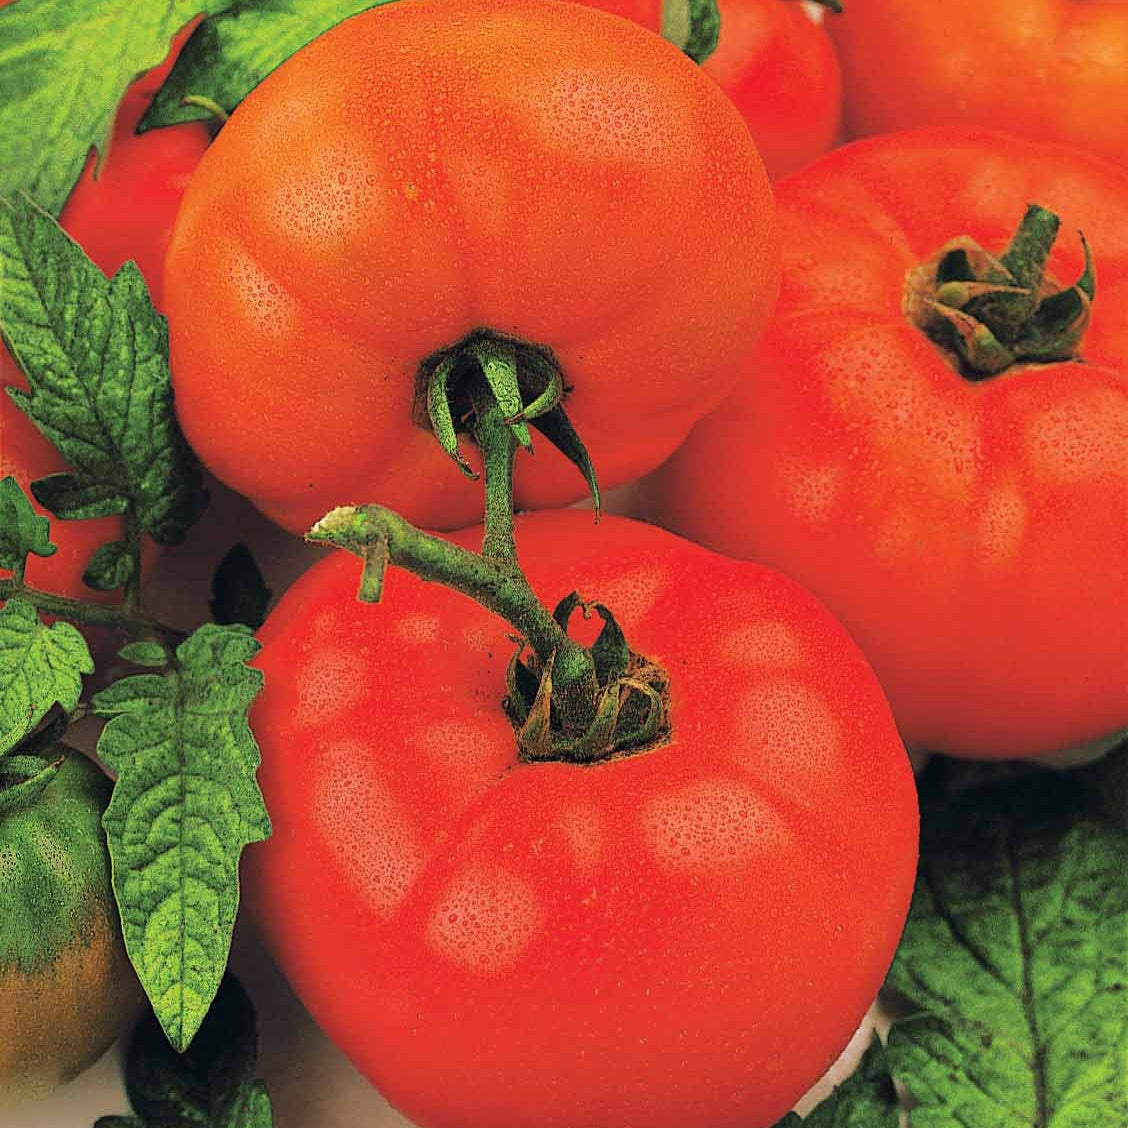 Semences bio de Tomate Japonaise basse